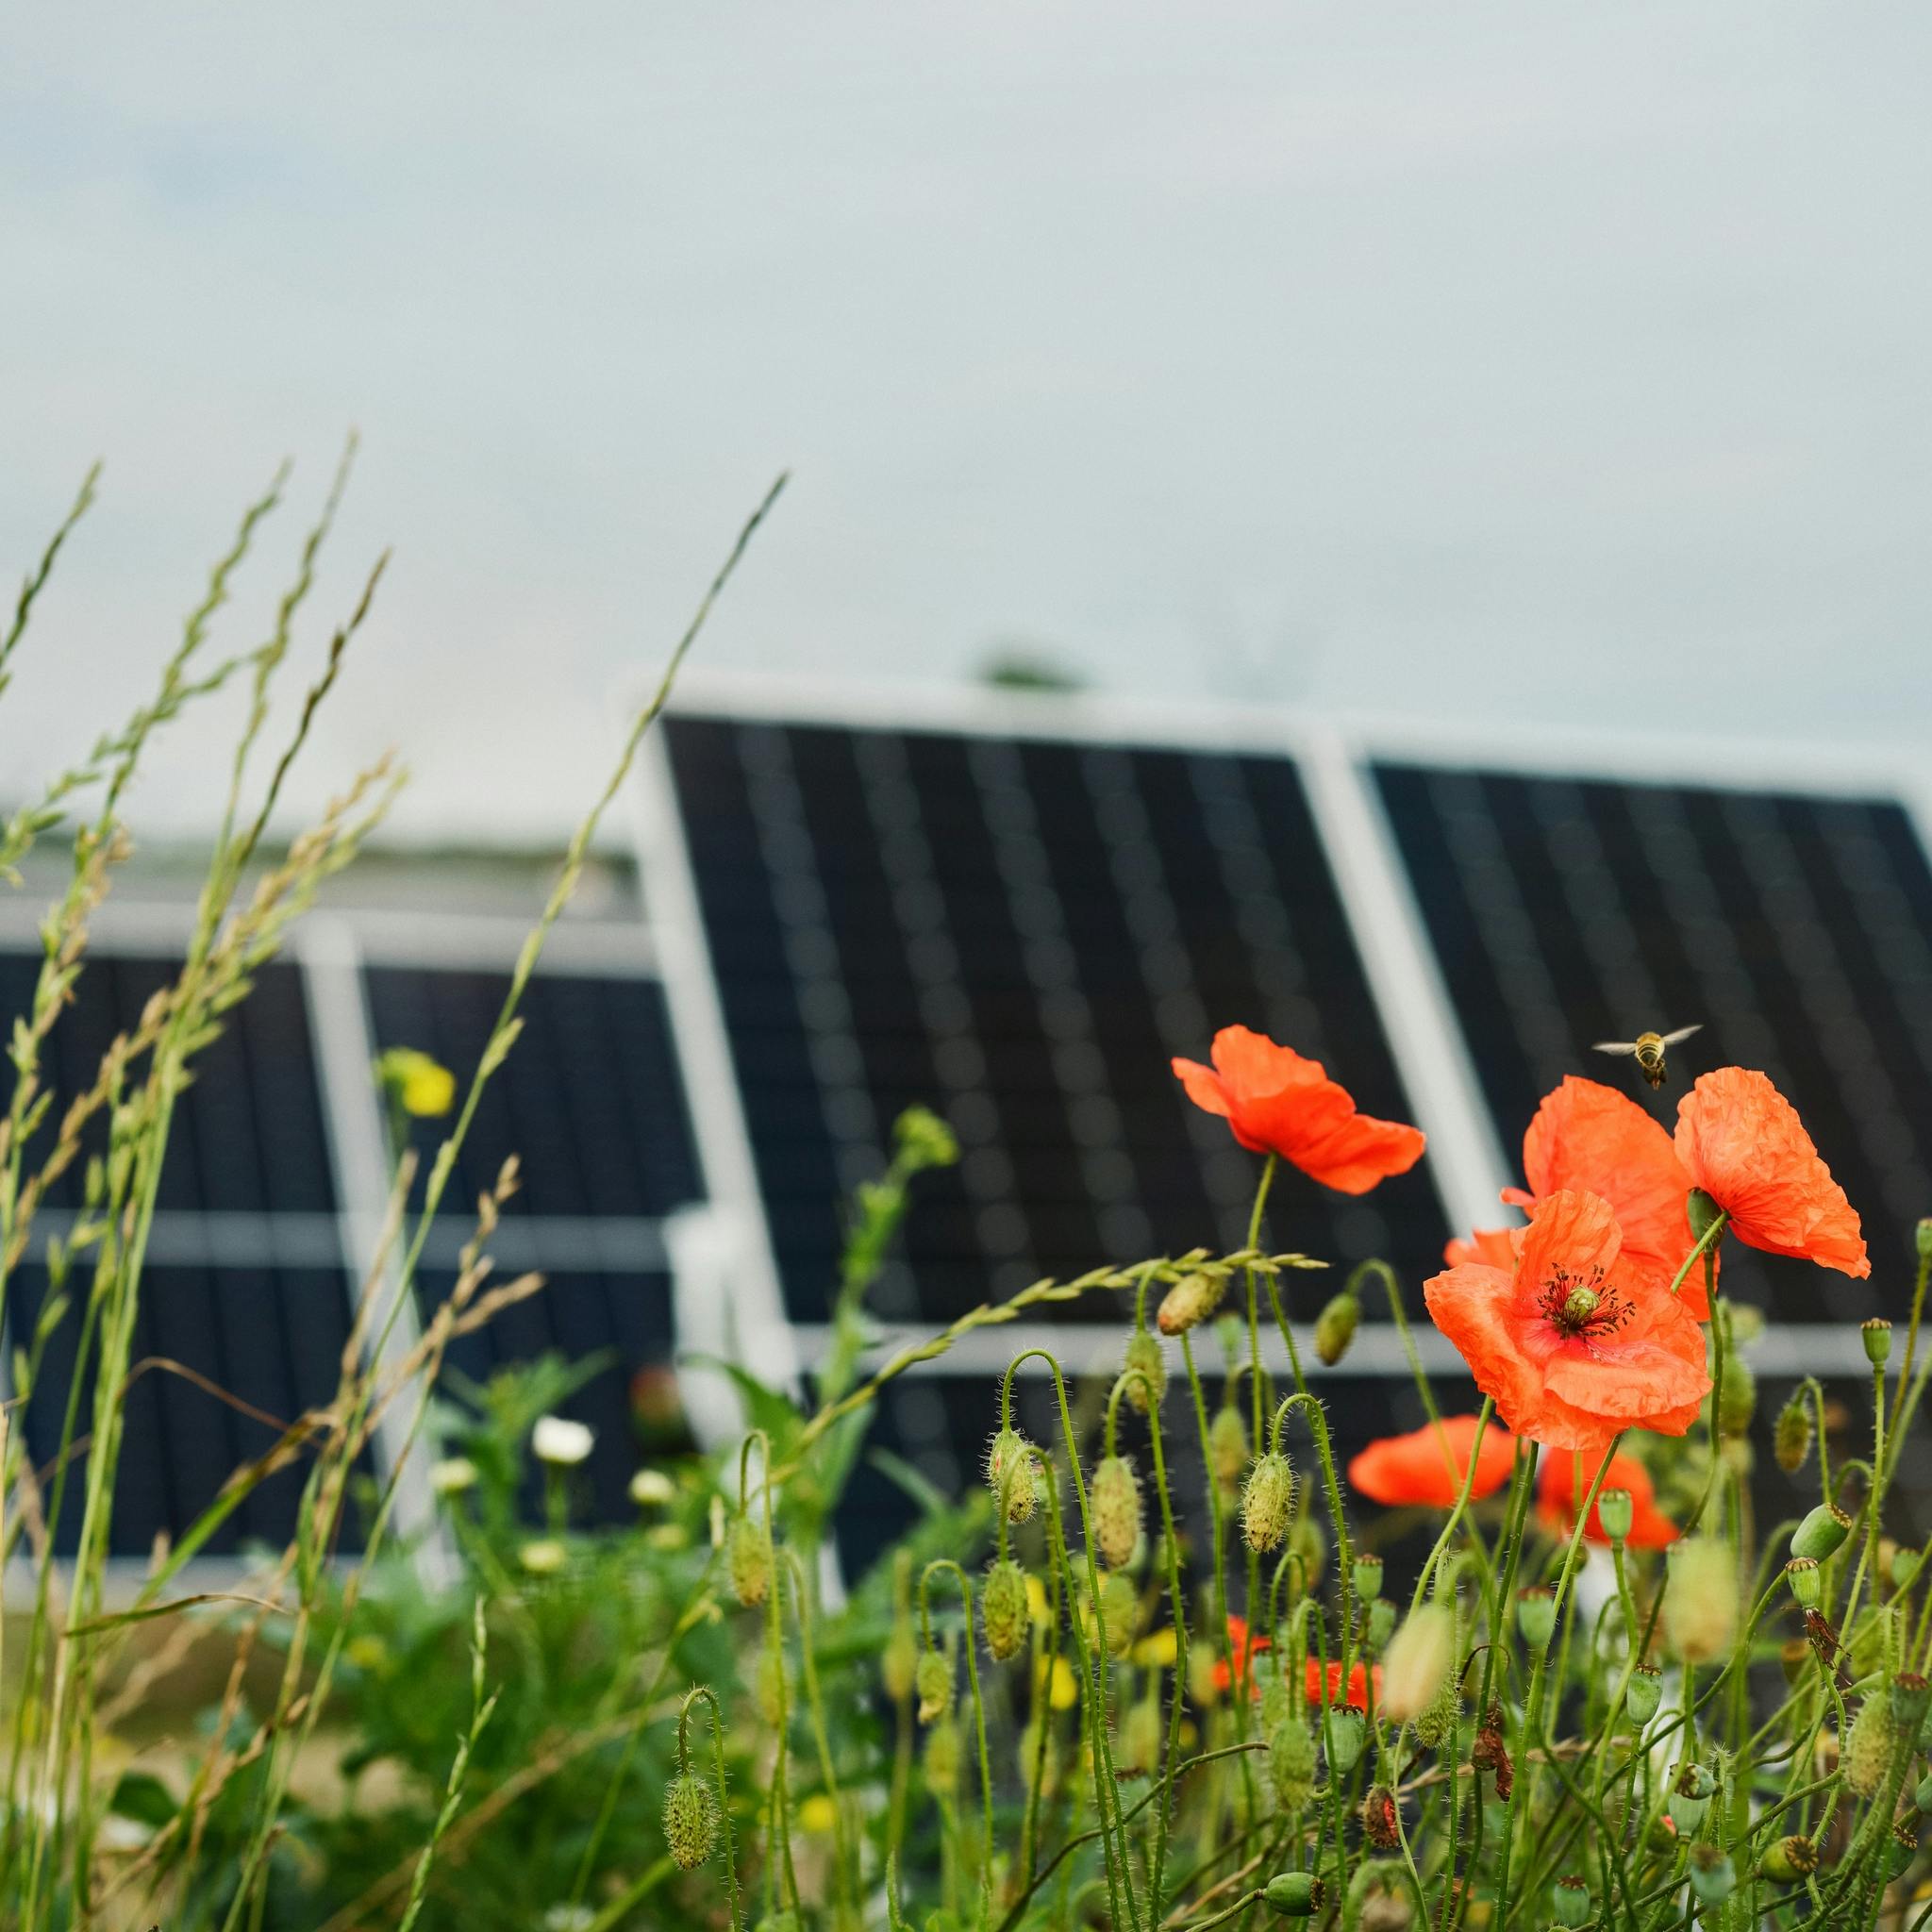 Solar panels tracker in Højby solar park